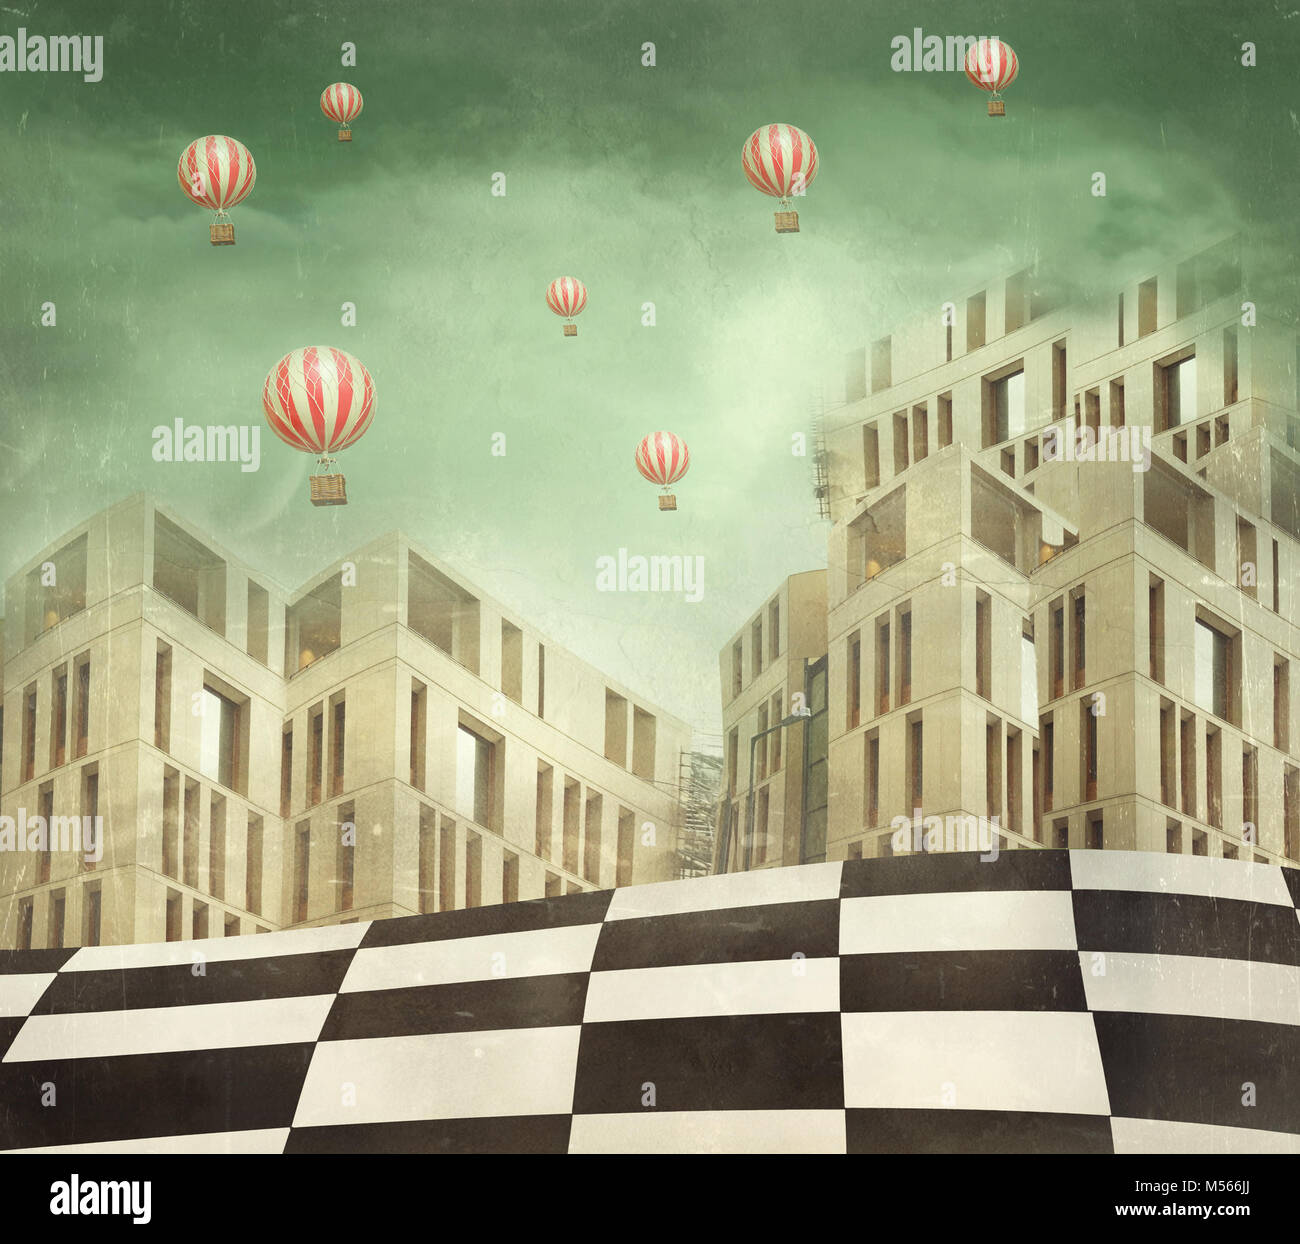 Abbildung einer in mehreren modernen Gebäuden in eine surreale Landschaft und viele Heißluftballons Stockfoto